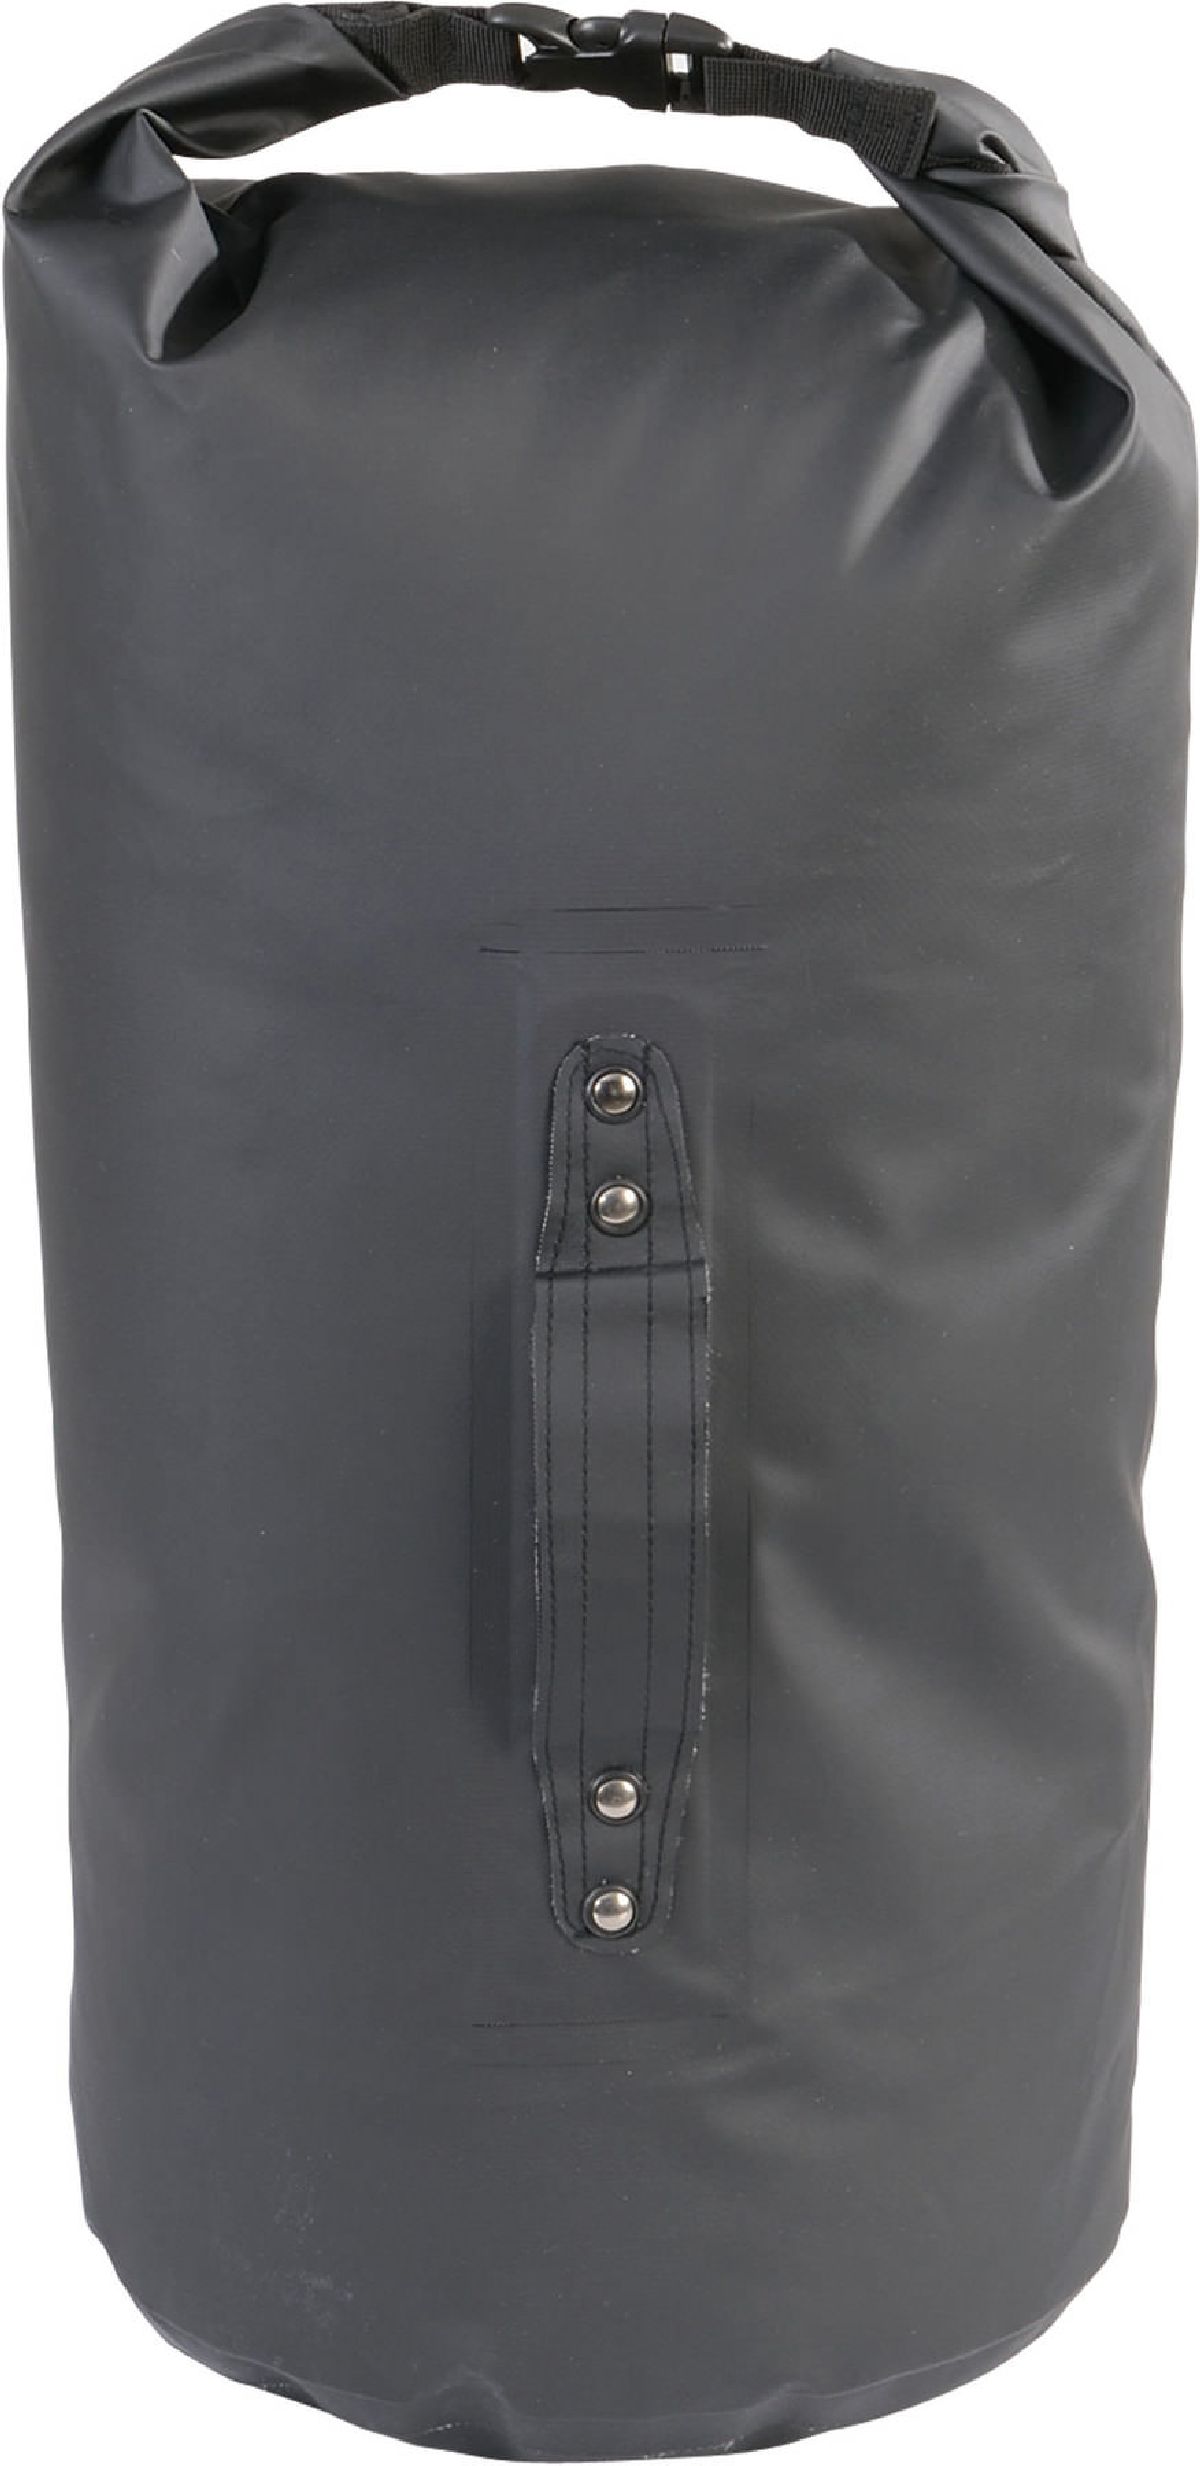 Speedbag 75 schwarz, 75L Volumen